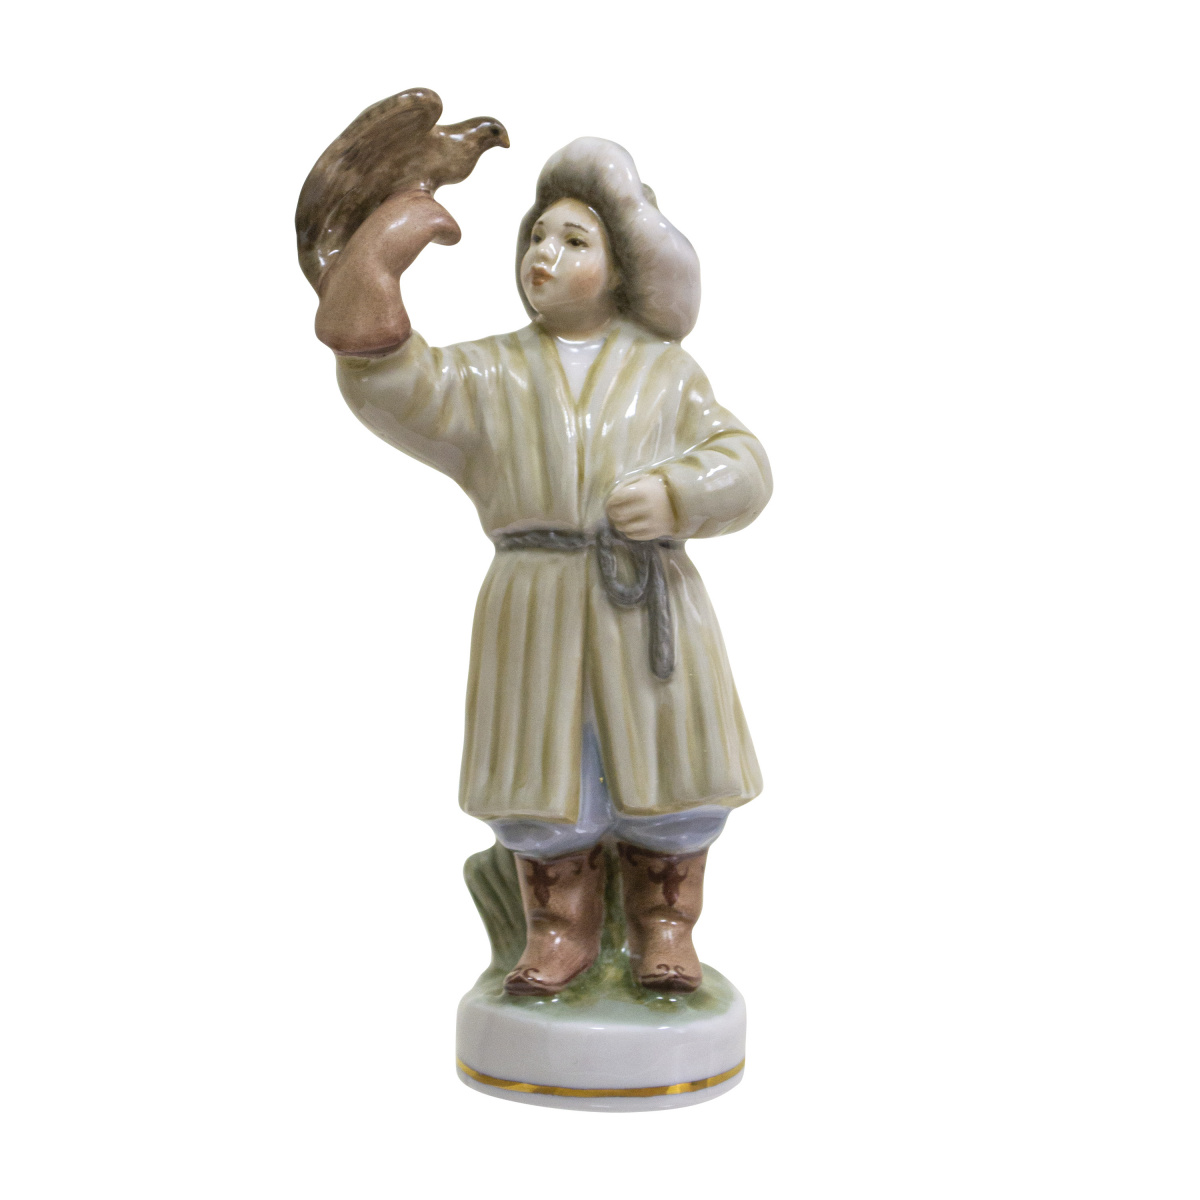 Скульптура "Казахский мальчик с беркутом" автор Малышева Н.А.